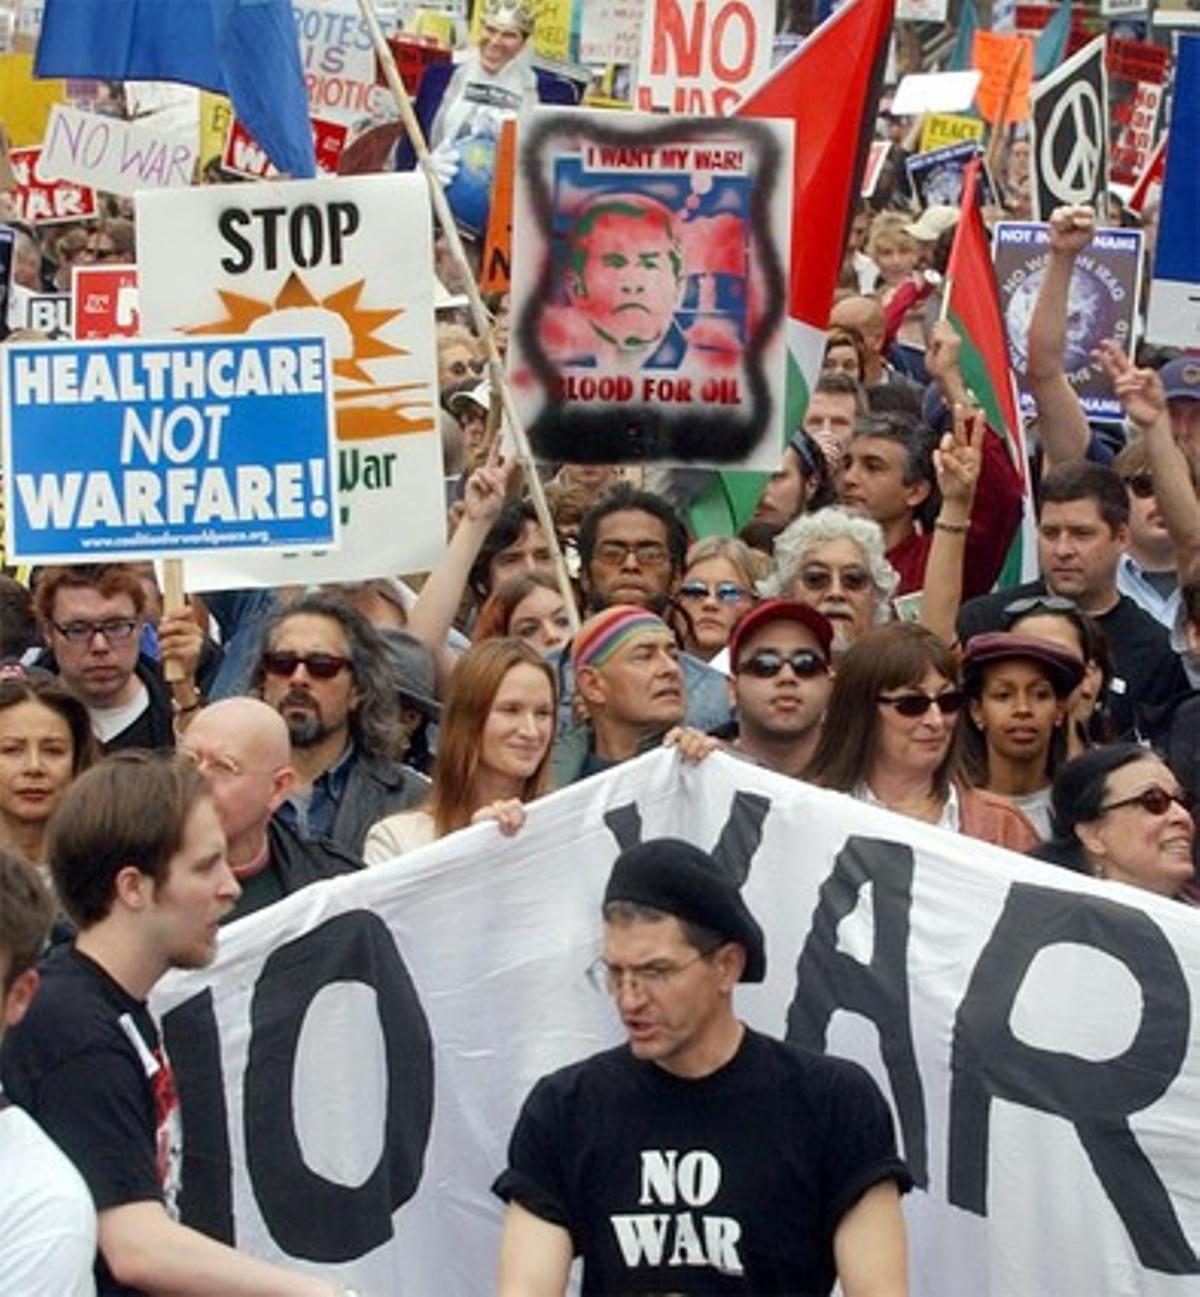 Los actores de Hollywood contrarios a la intervención militar de EEUU en Irak también salieron a la calle para manifestarse. En la imagen, Anjelica Houston (arriba, segunda a la derecha, tras la pancarta).